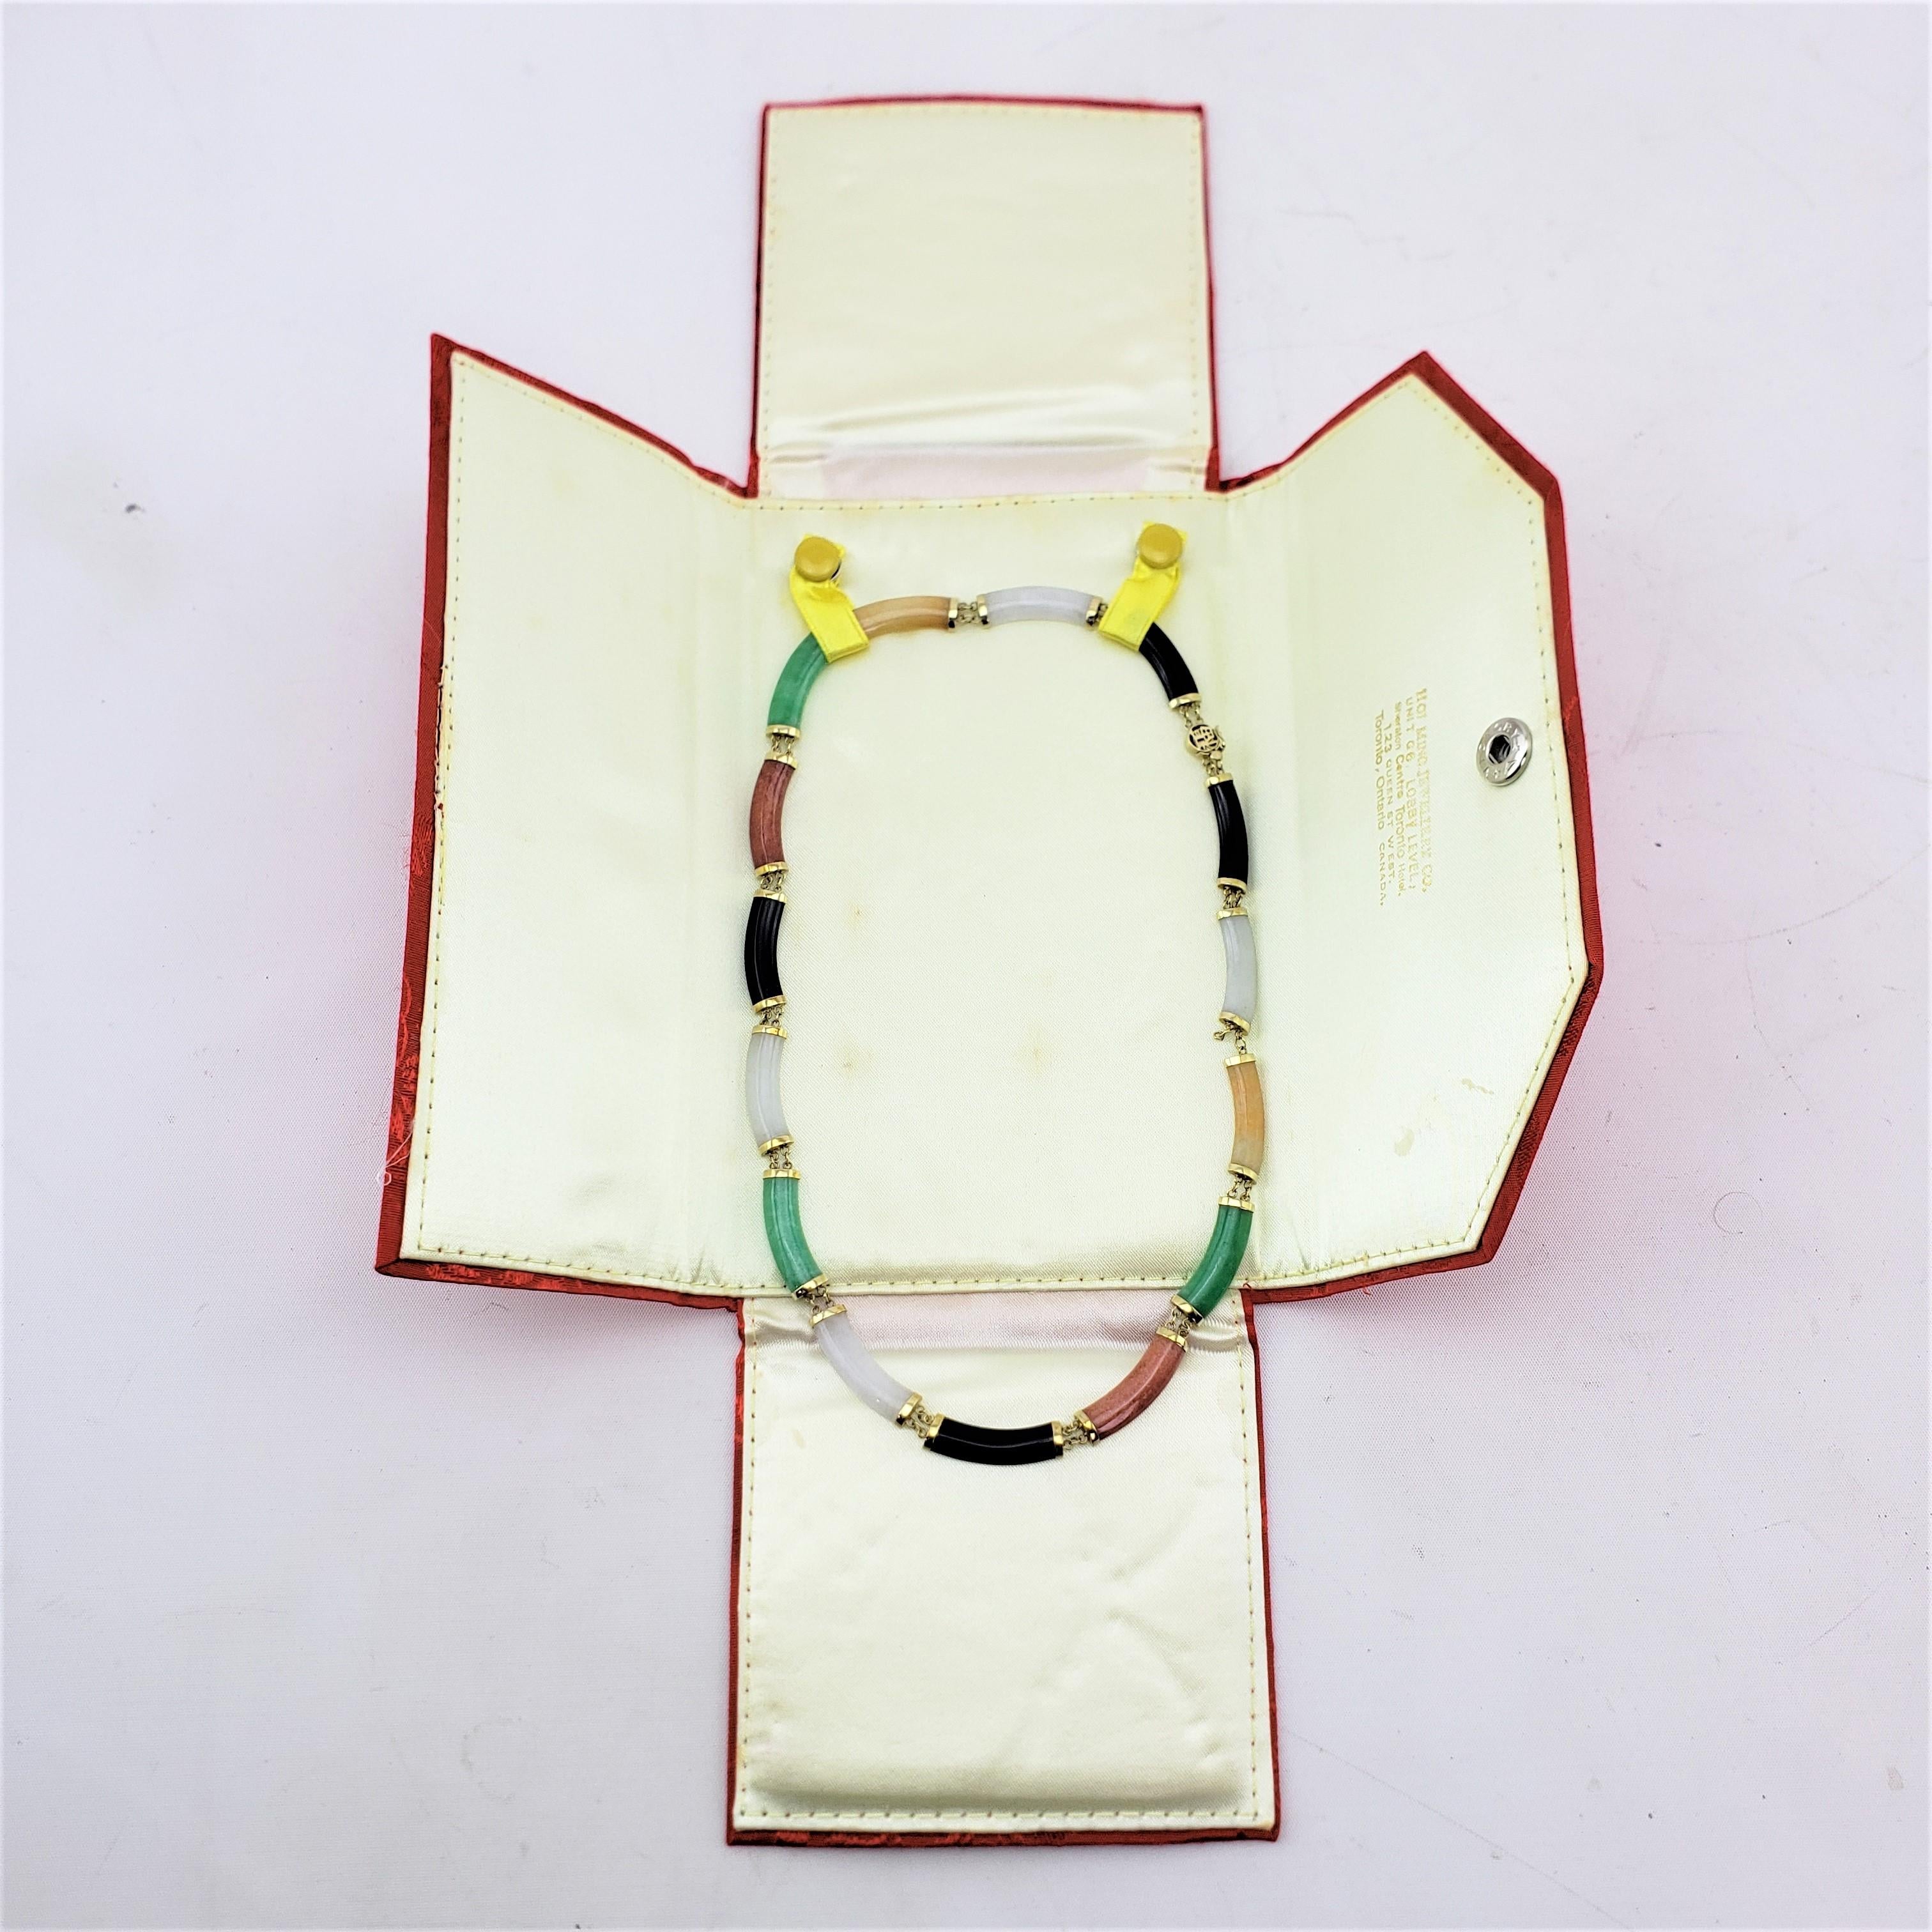 Diese  Die Halskette ist möglicherweise von einem unbekannten Hersteller signiert, stammt aber aus China und wurde um 1970 im Stil des Mid Century Modern hergestellt. Das Collier besteht aus 14-karätigem Gelbgold, das die halbkreisförmig